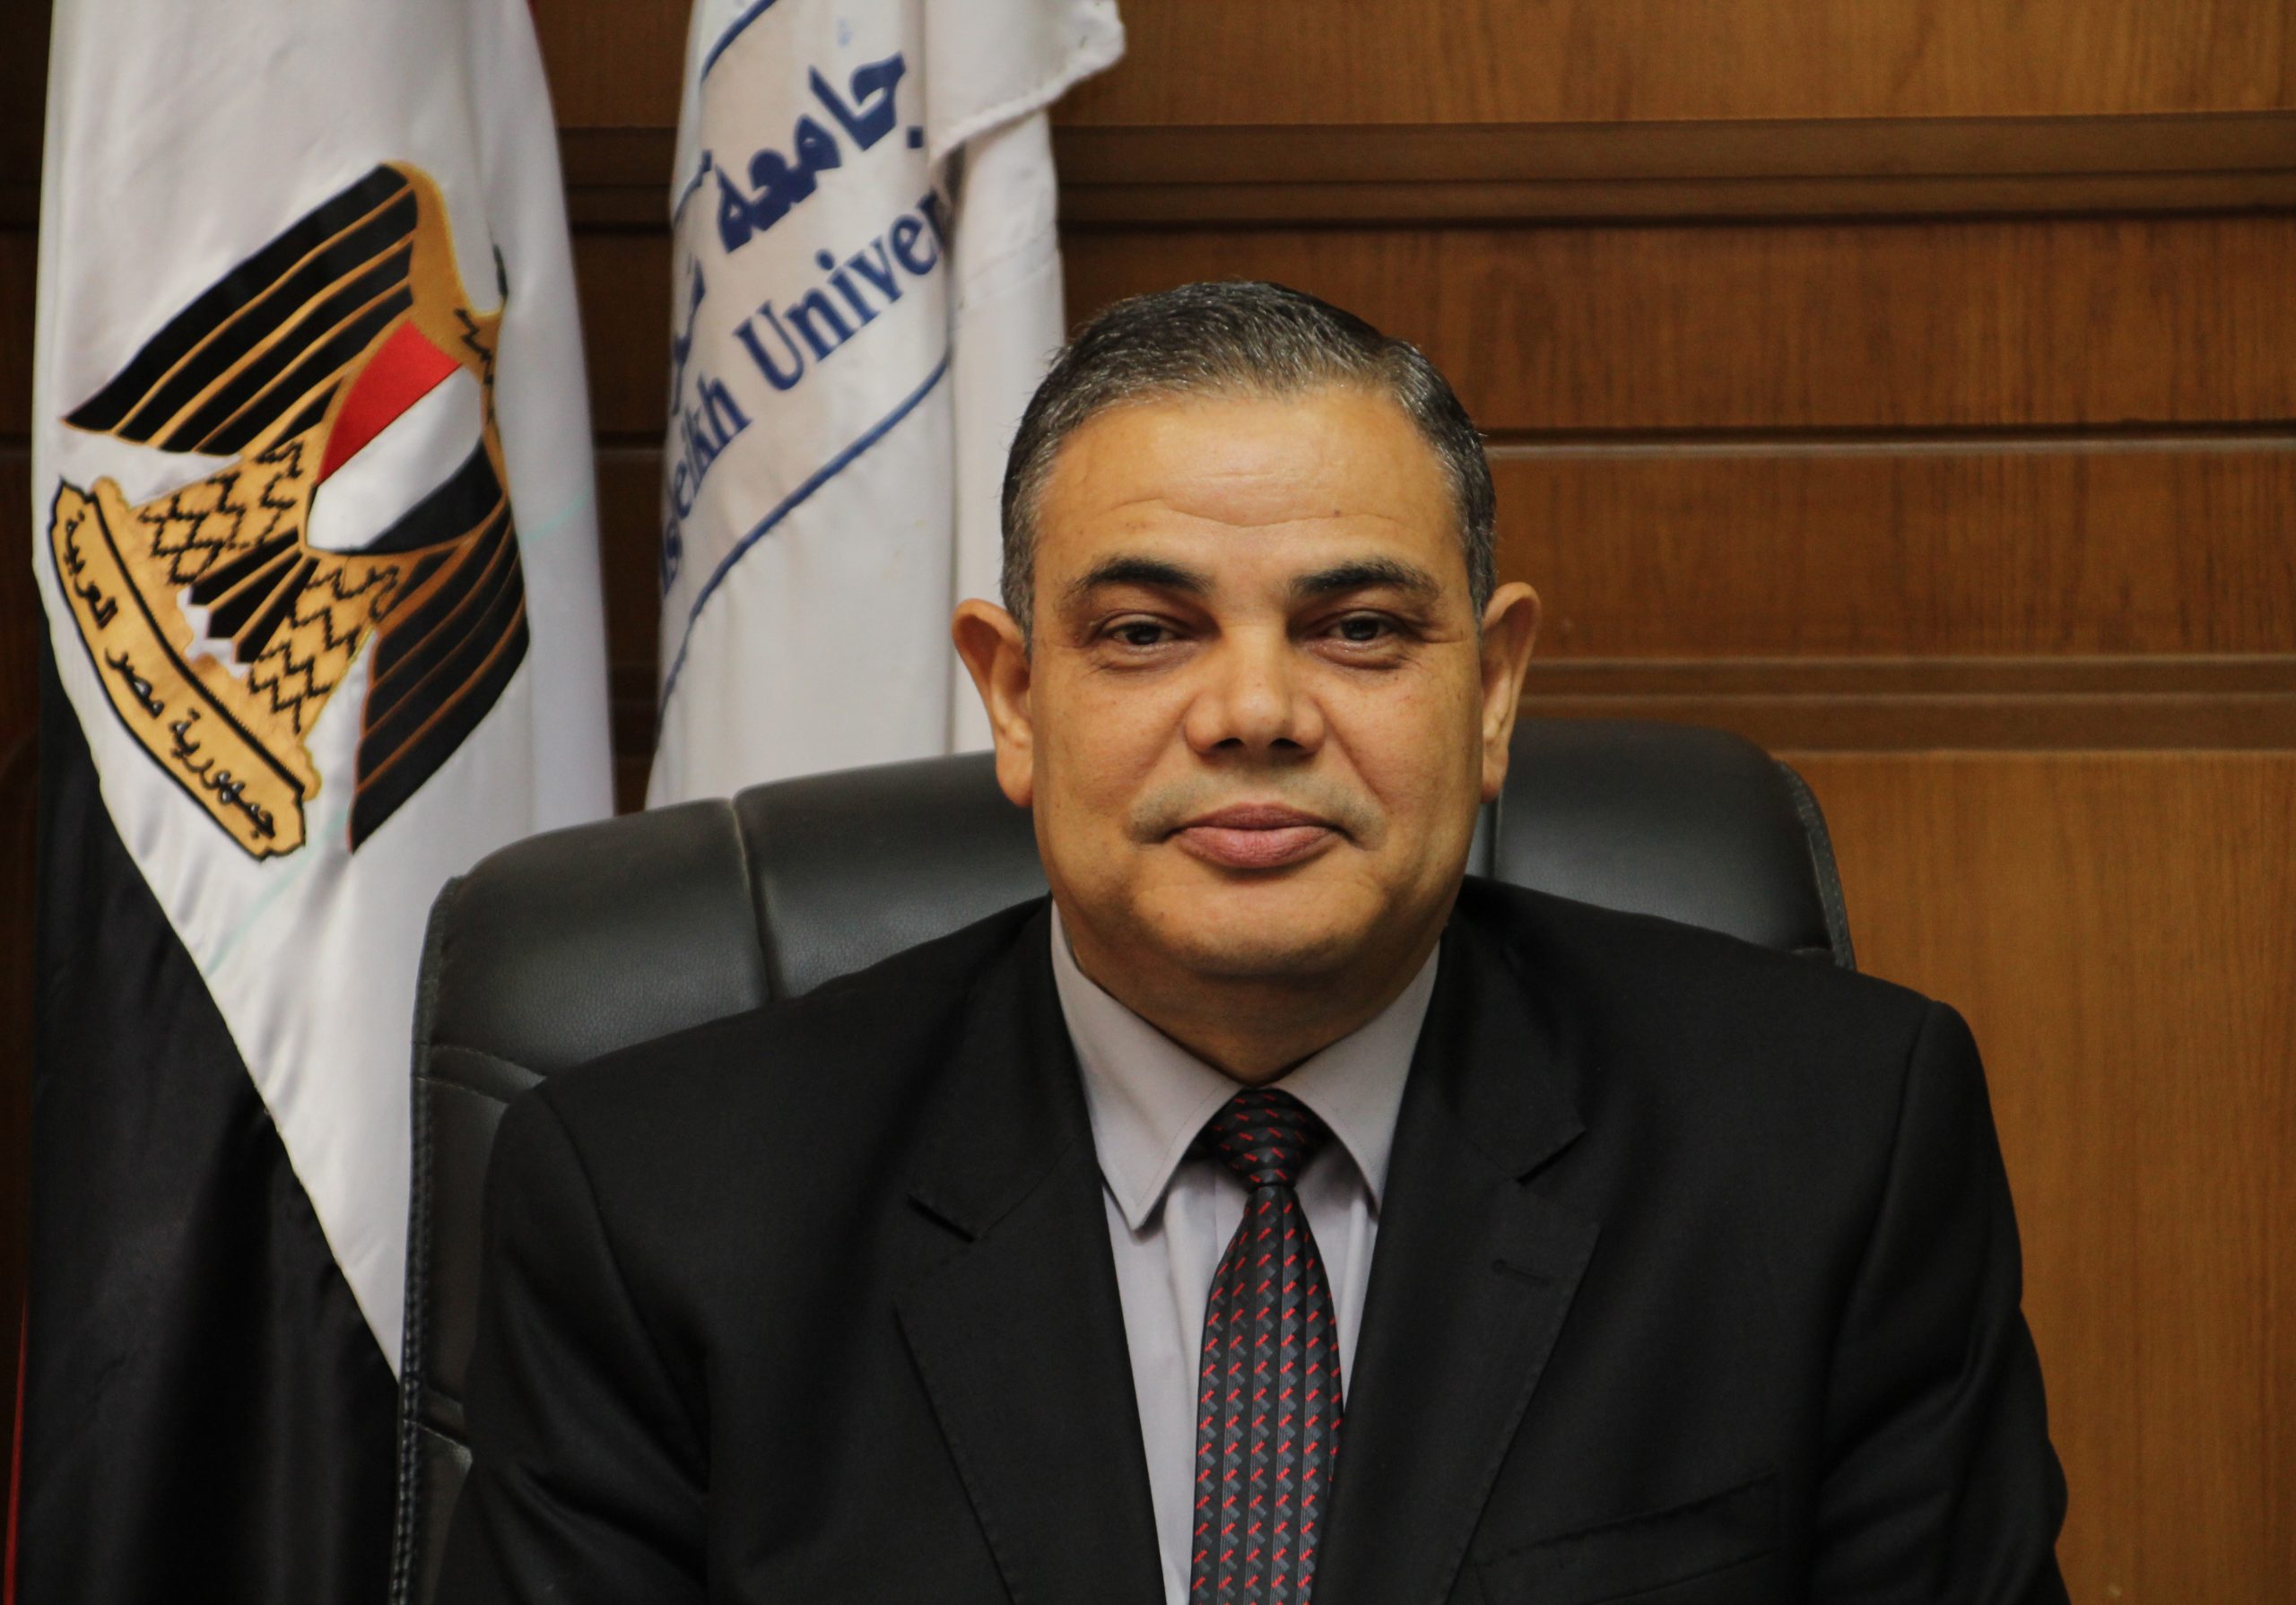   رئيس جامعة كفر الشيخ يدعو المصريين للمشاركة في انتخابات مجلس النواب